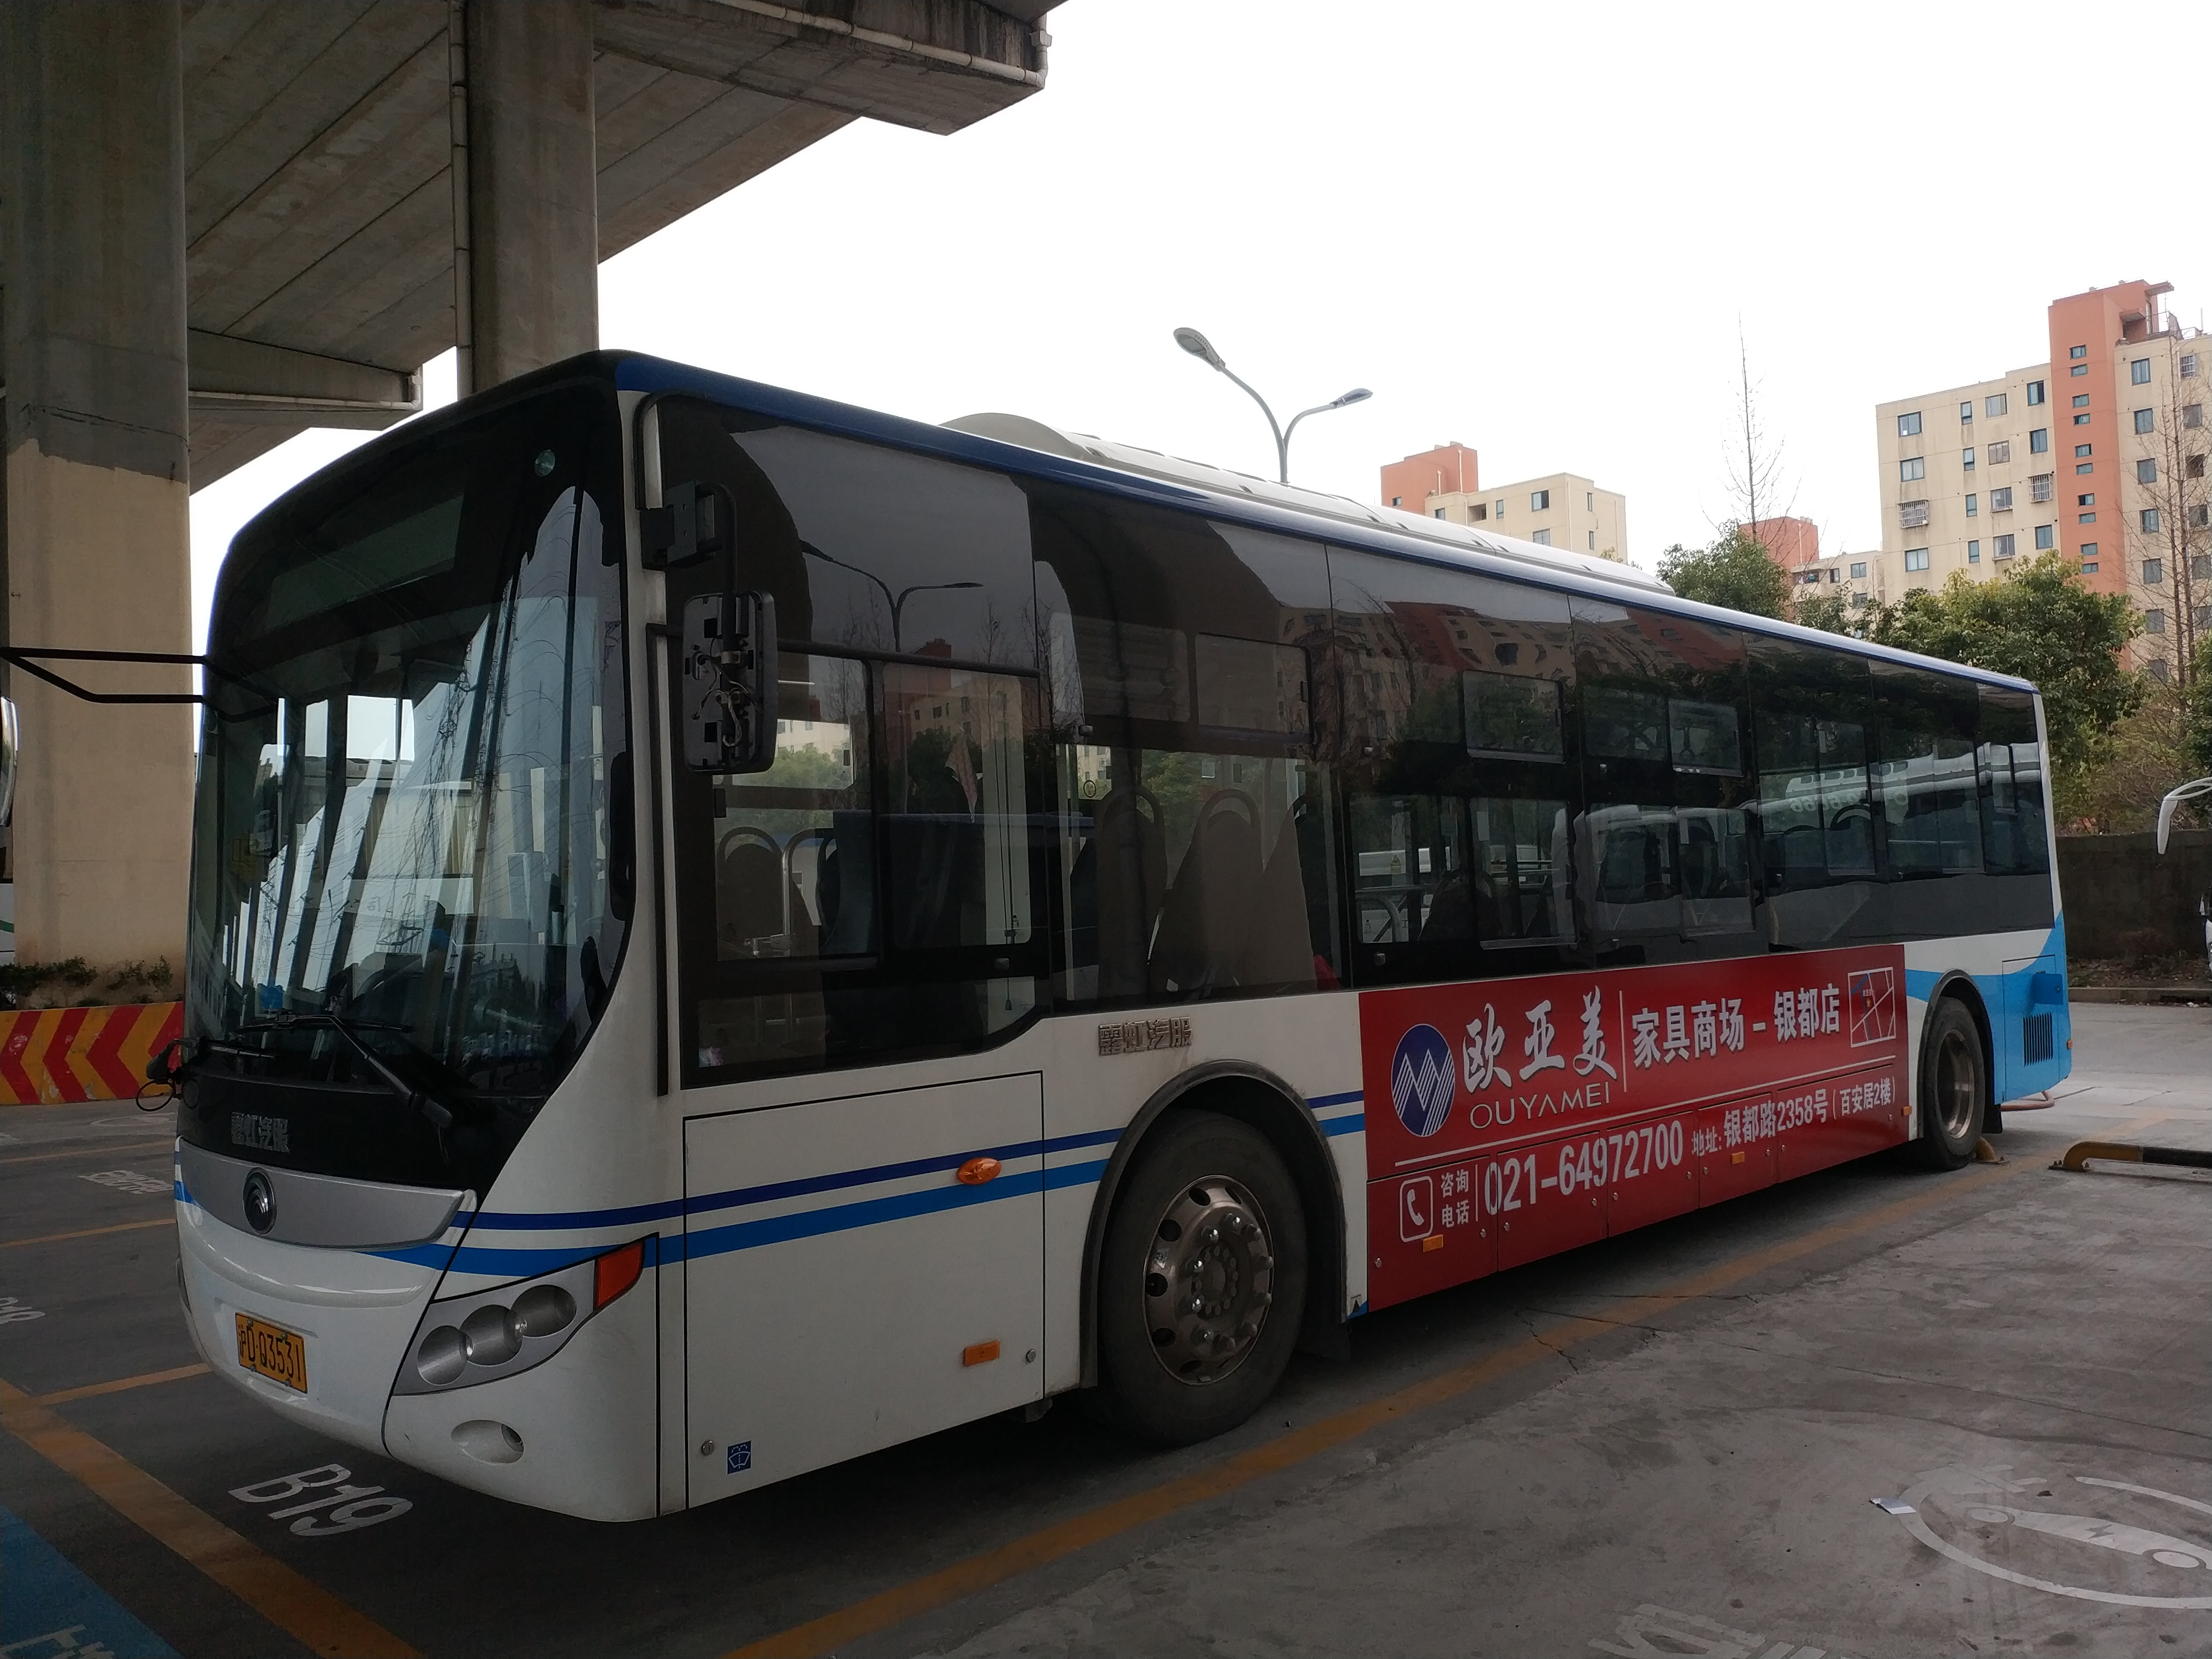 上海户外广告投放——公交广告 上海户外广告投放——灯箱广告